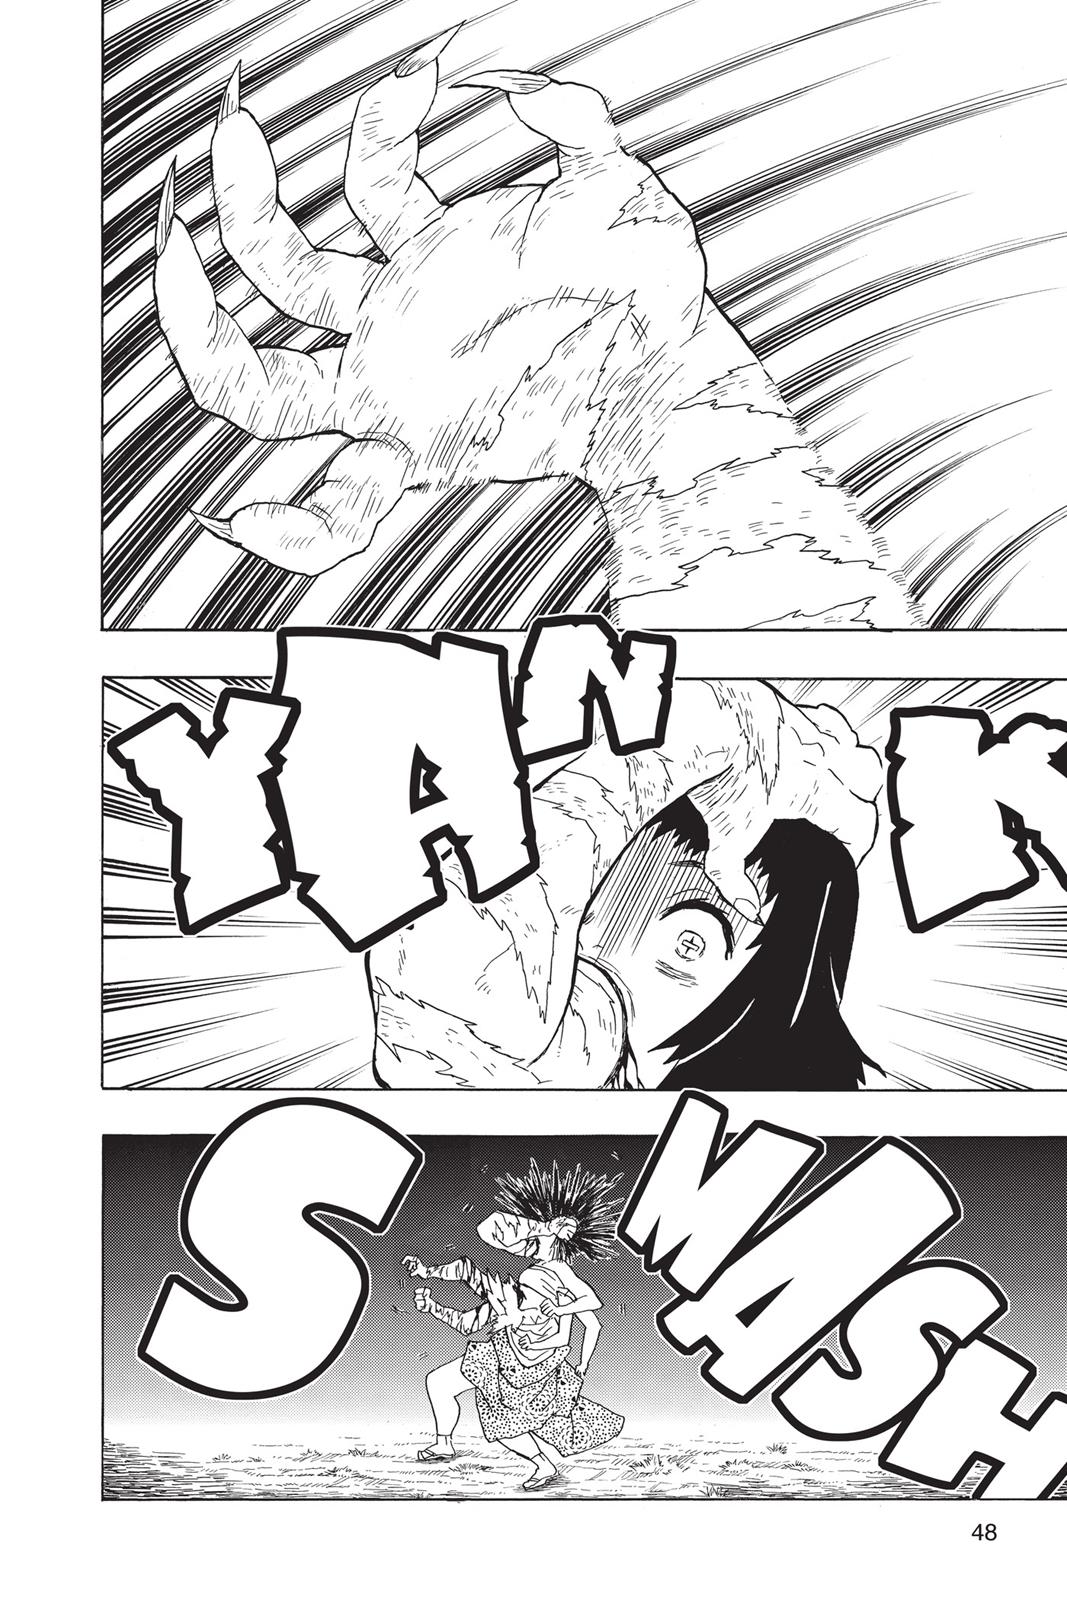 Demon Slayer Manga Manga Chapter - 19 - image 2